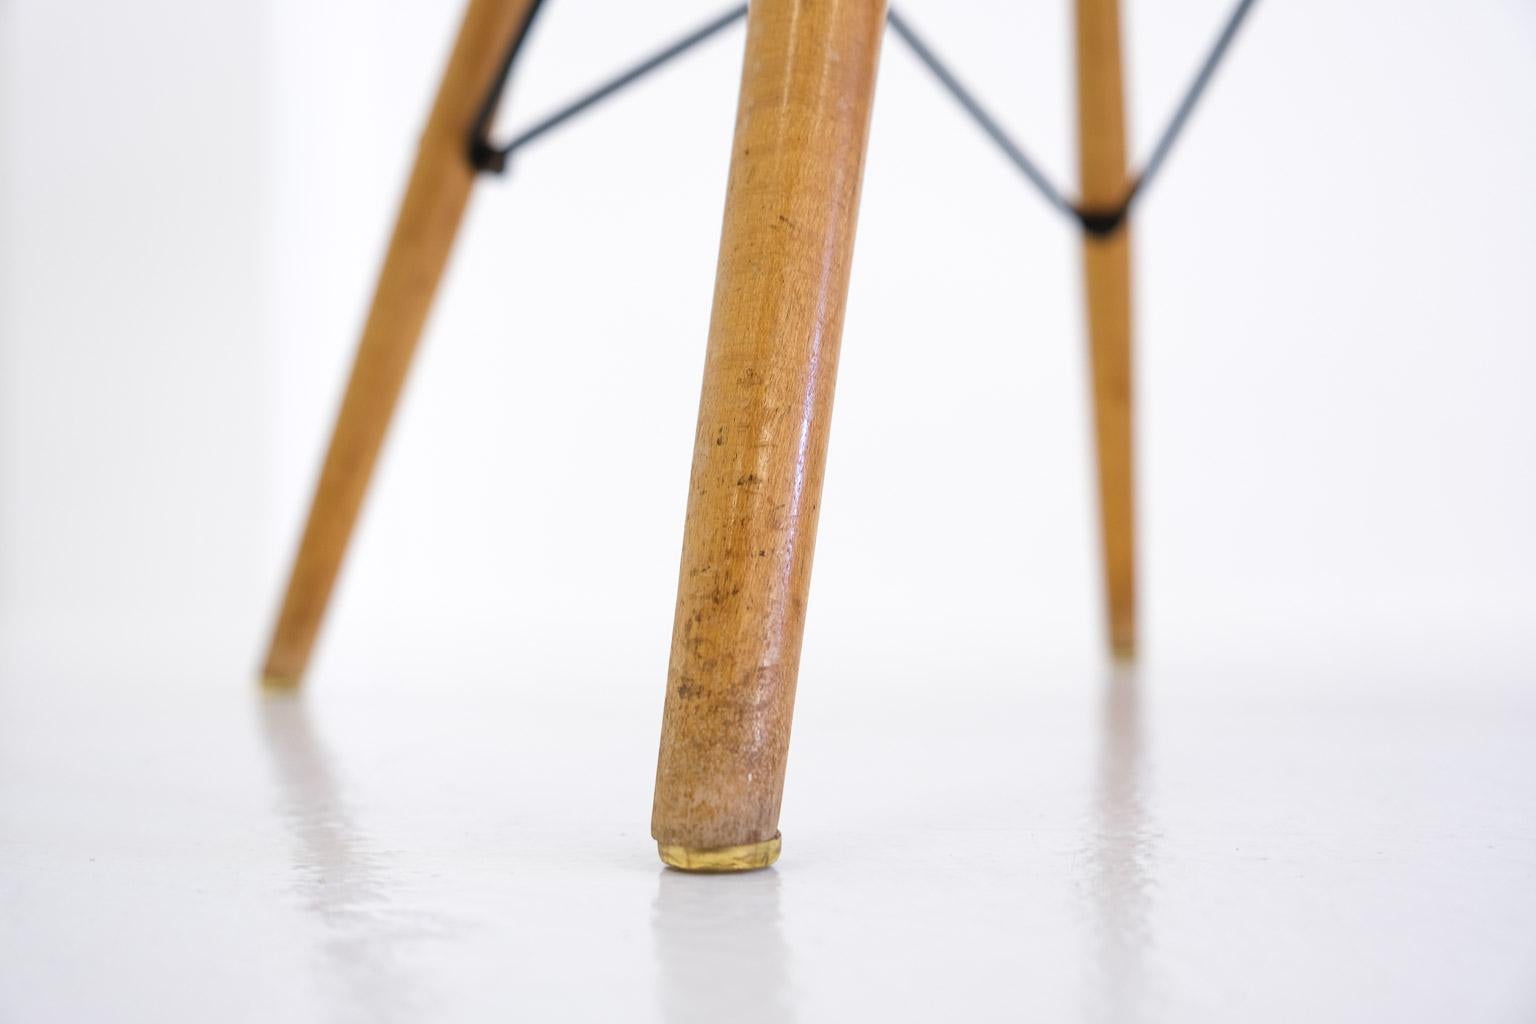 Pkw-2 Pivoting K-Wire Wood Base Side Chair, Eames Herman Miller, Bikini, Seng For Sale 9